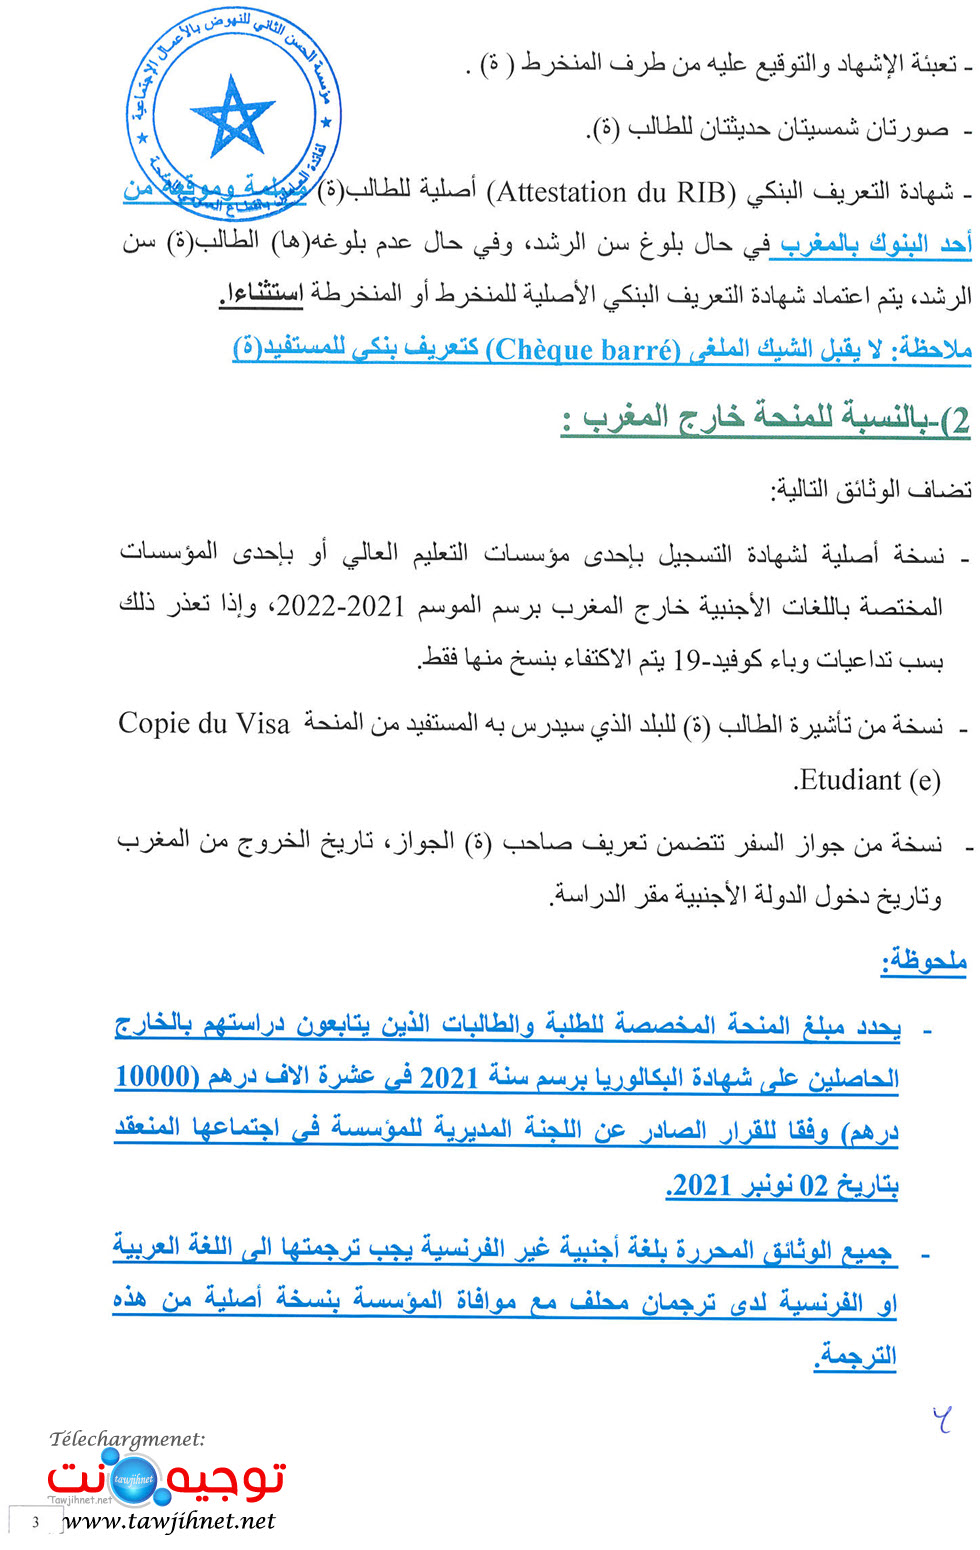 Bourse-FH2sante-2021-Fondation-Hassan II-oeuvres sociales-santé_Page_3.jpg